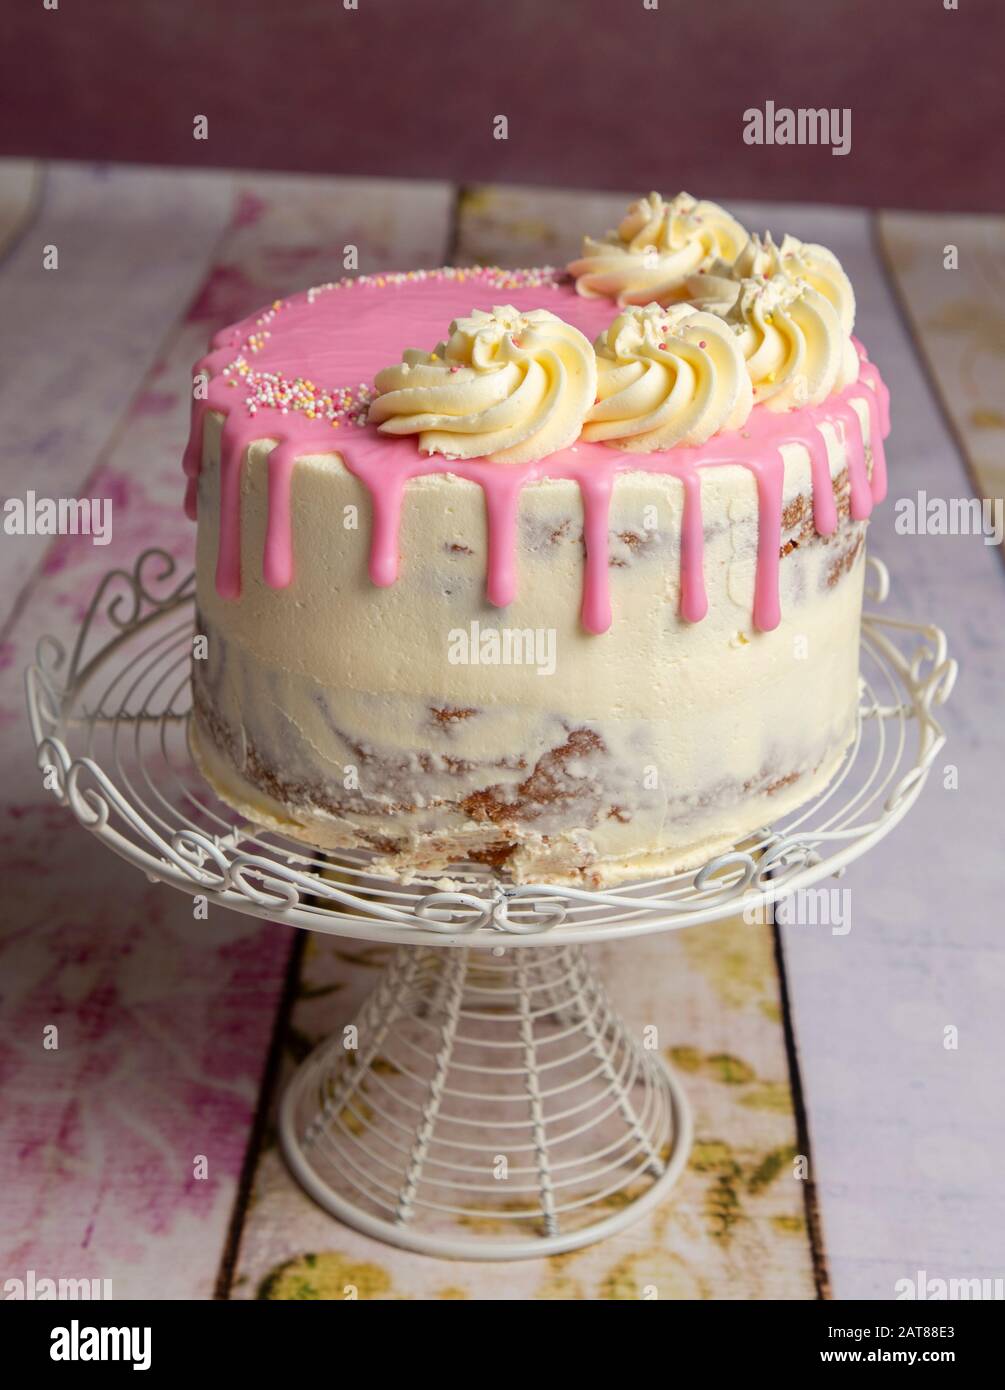 celebration cakes Stock Photo